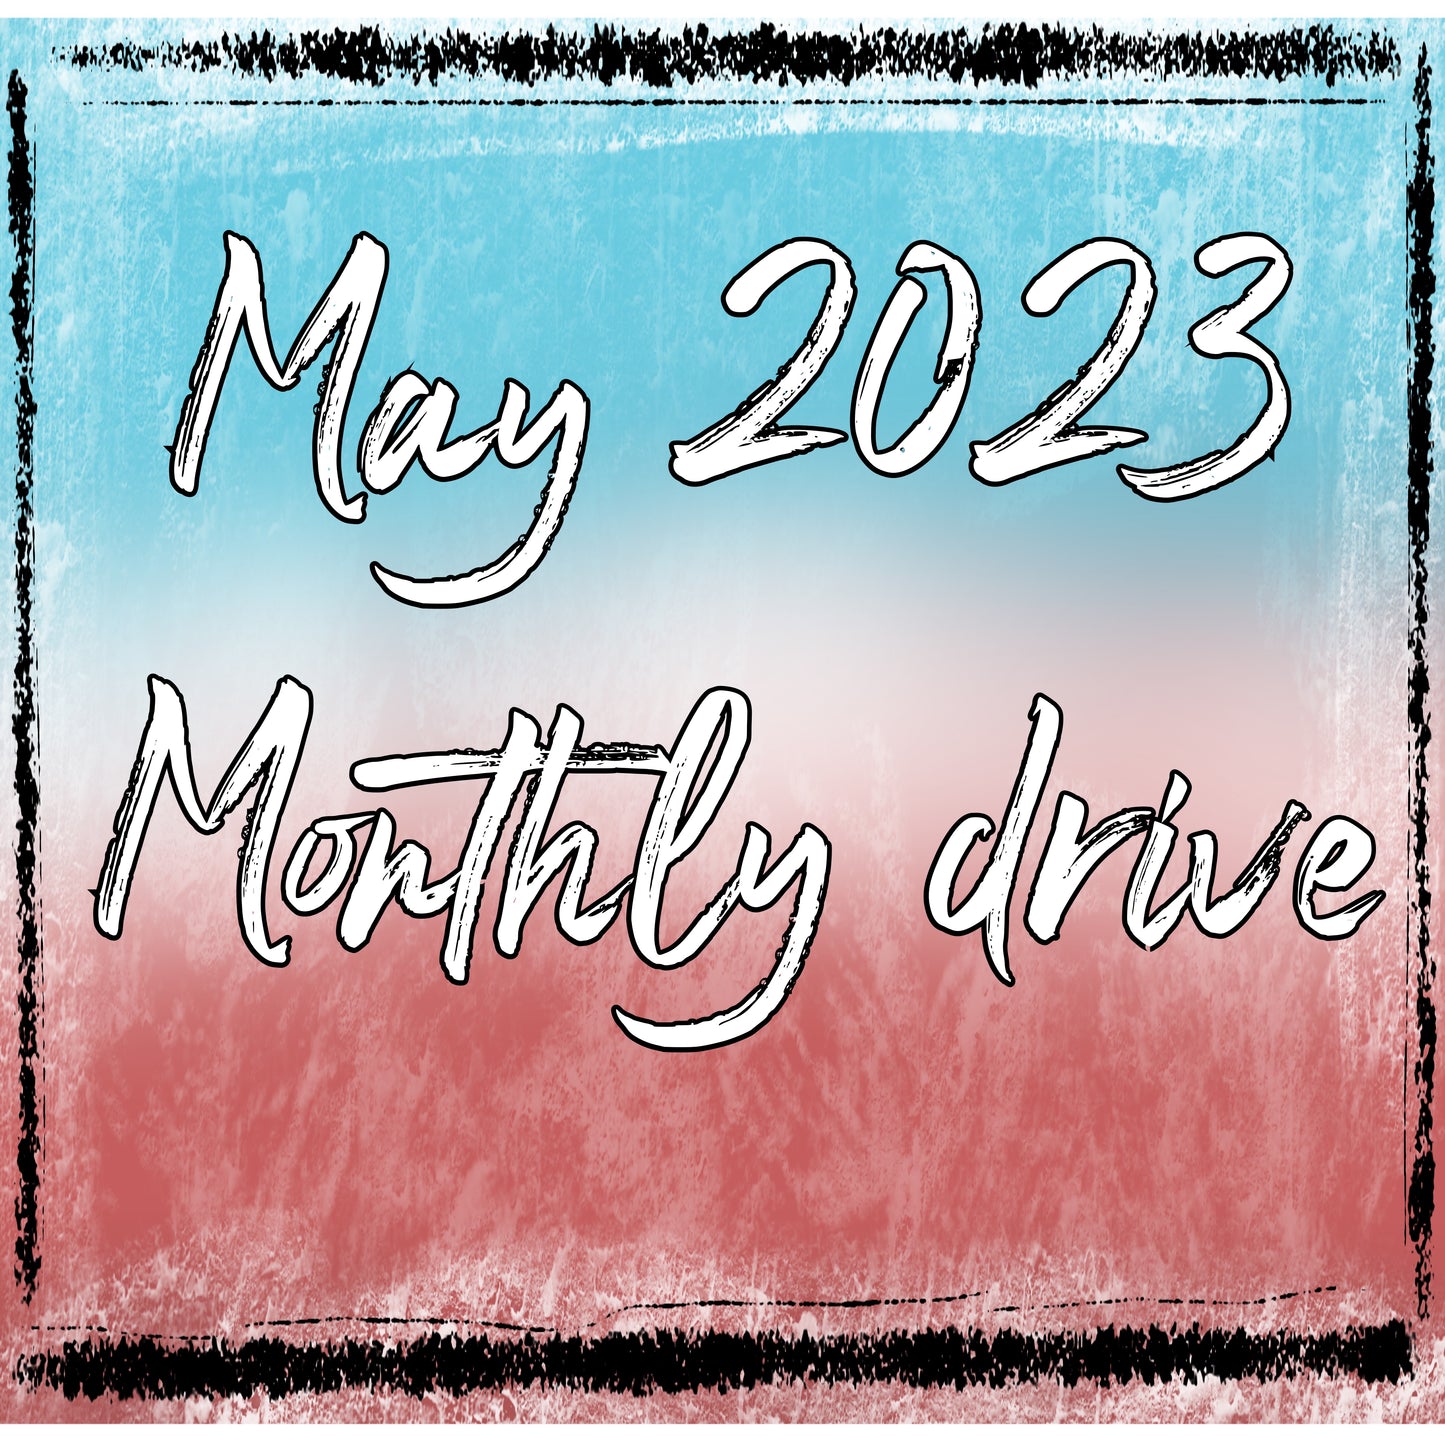 May 2023 drive